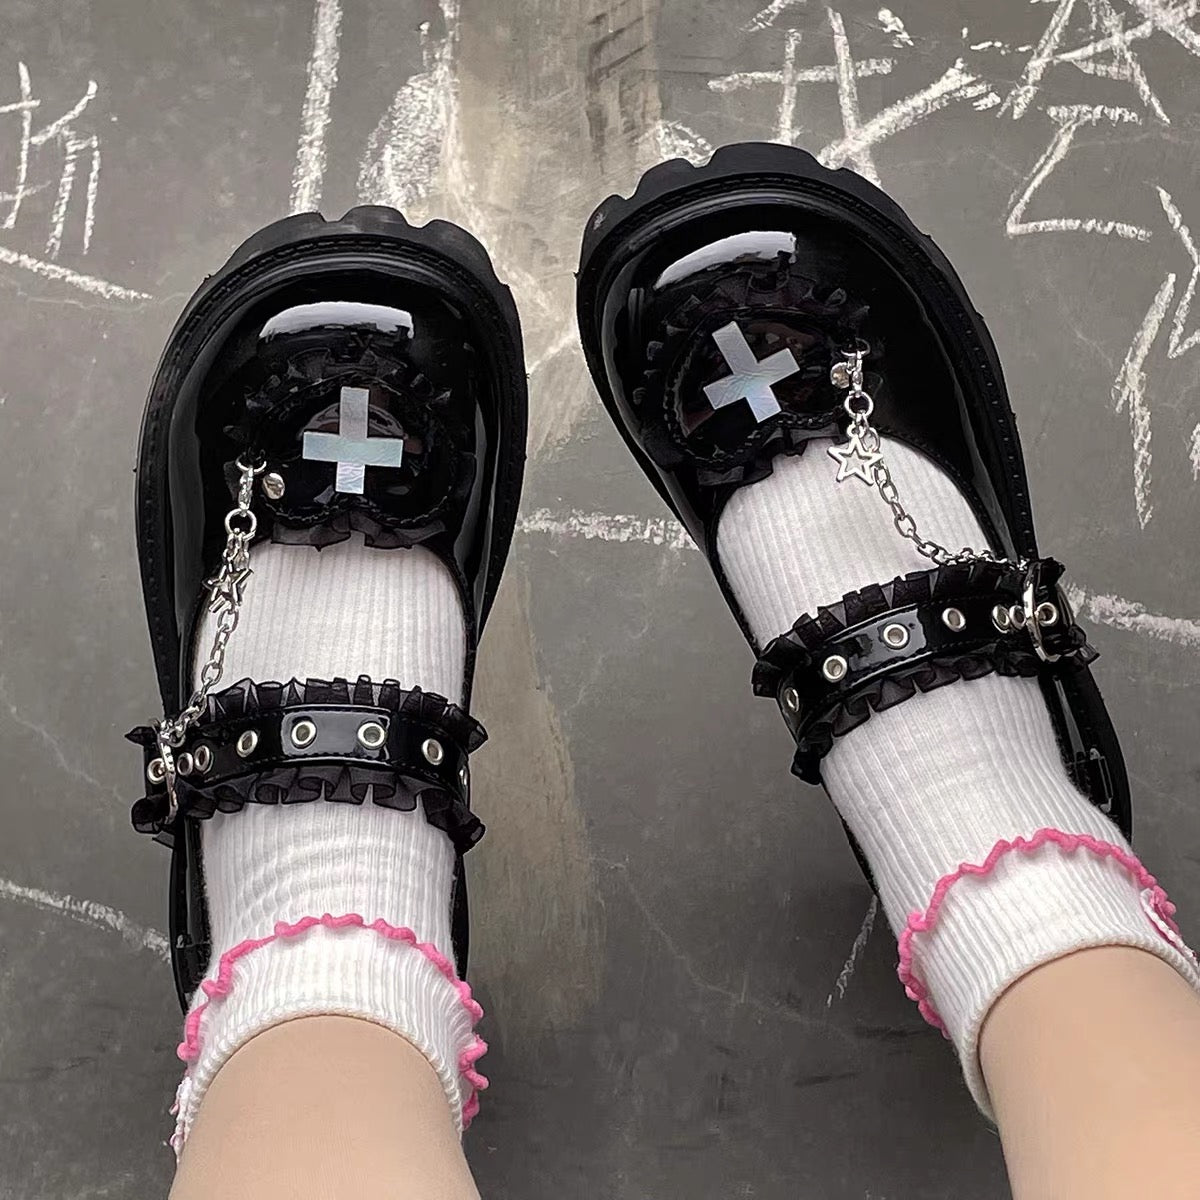 Harajuku Style Shoes – ivybycrafts